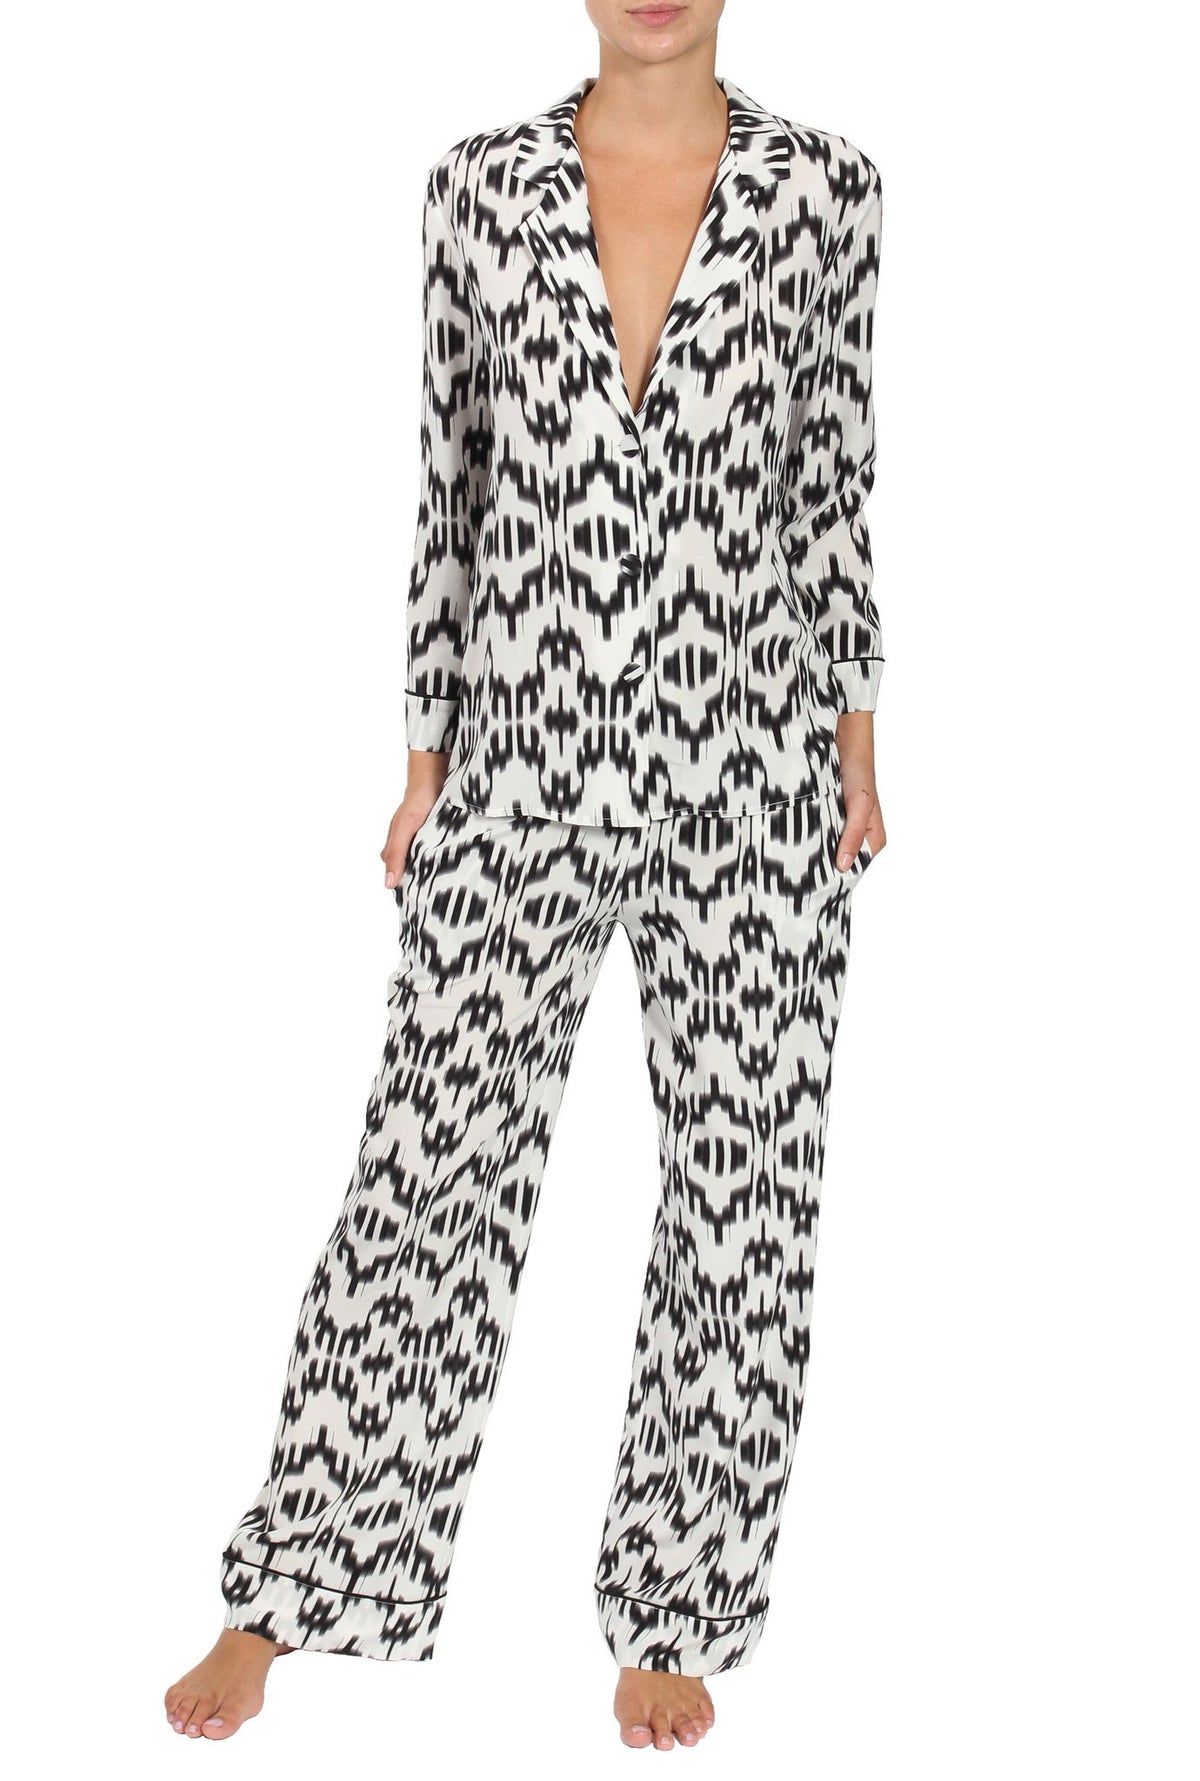 Silk Printed City Pajama City Pyjamas Marie France Van Damme Alta White Black 0 